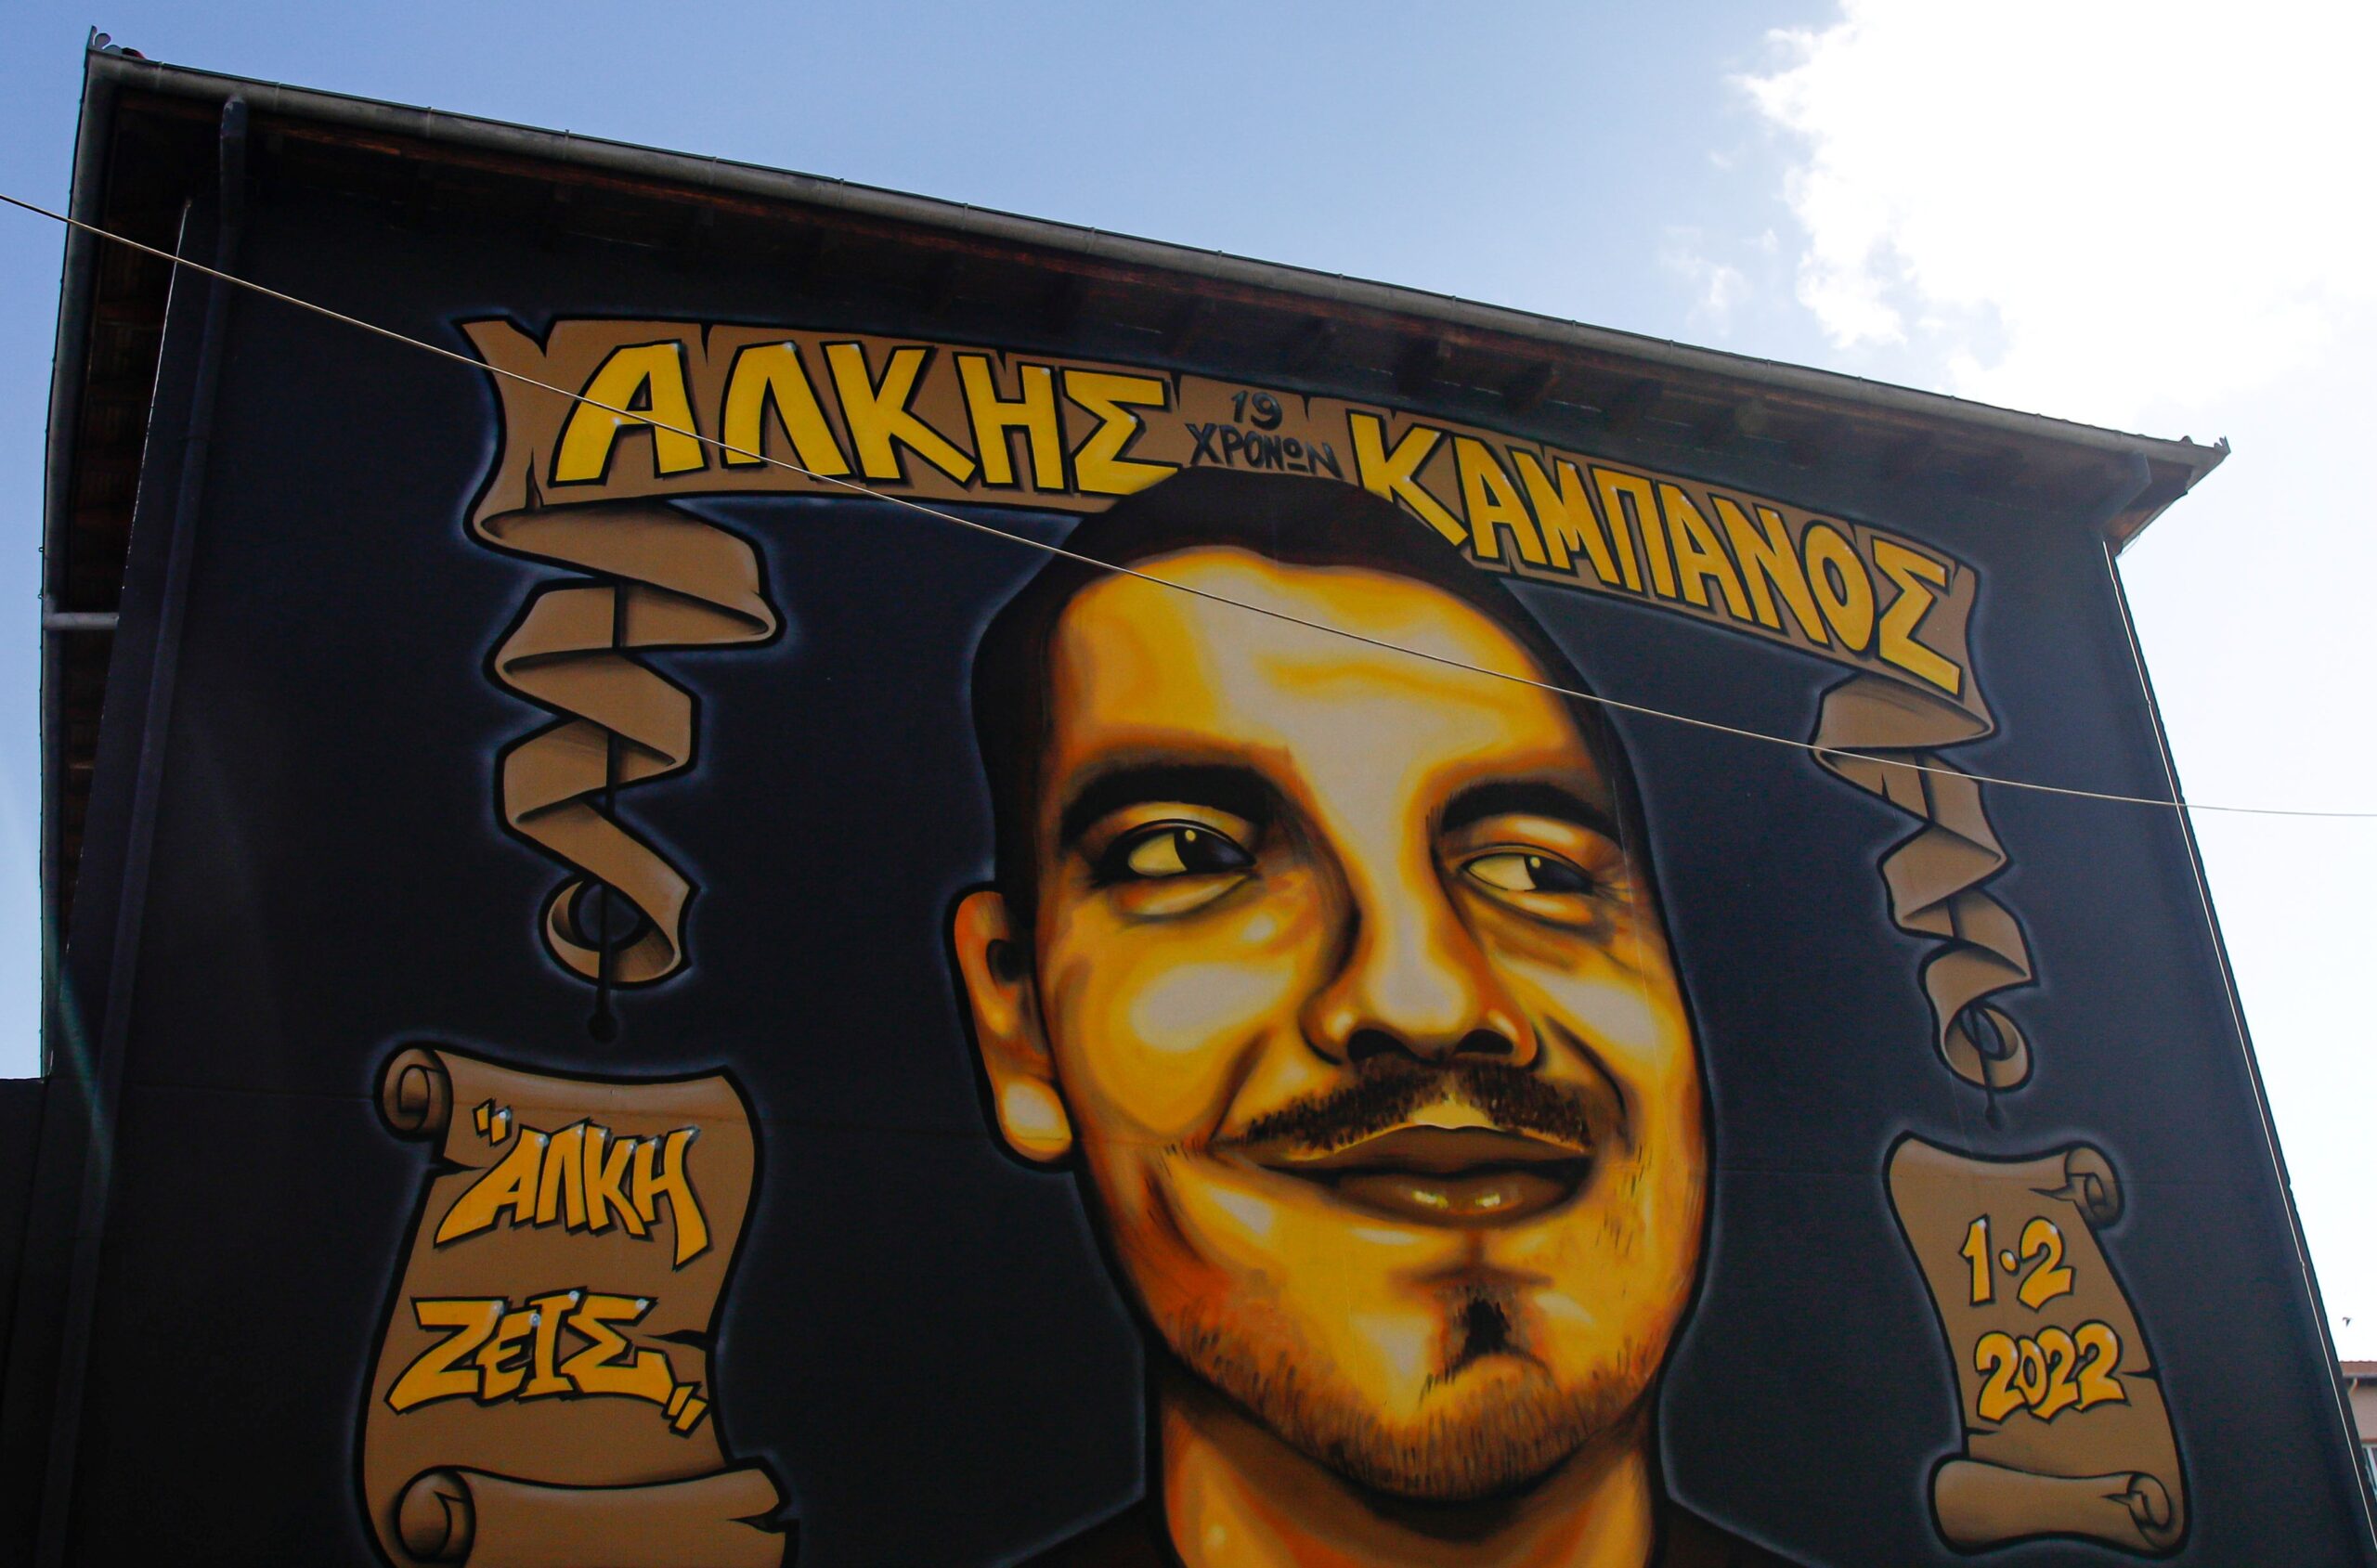 Δύο χρόνια από τη δολοφονία του Άλκη – Δράσεις υπέρ της αθλητικής συνύπαρξης σε Θεσσαλονίκη και Αθήνα